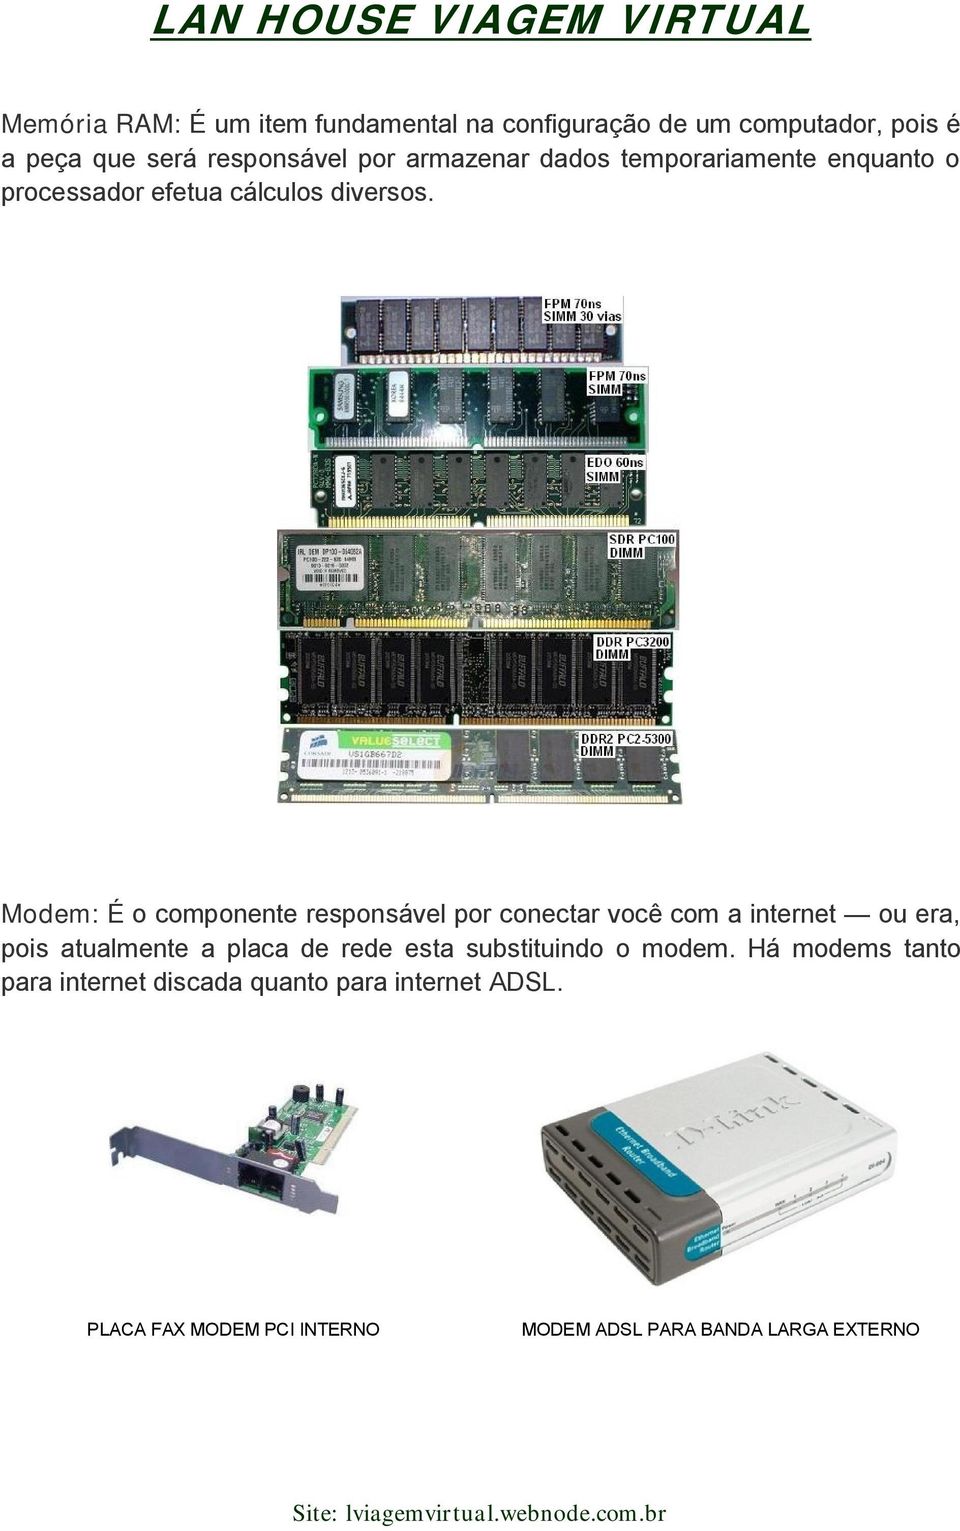 Modem: É o componente responsável por conectar você com a internet ou era, pois atualmente a placa de rede esta